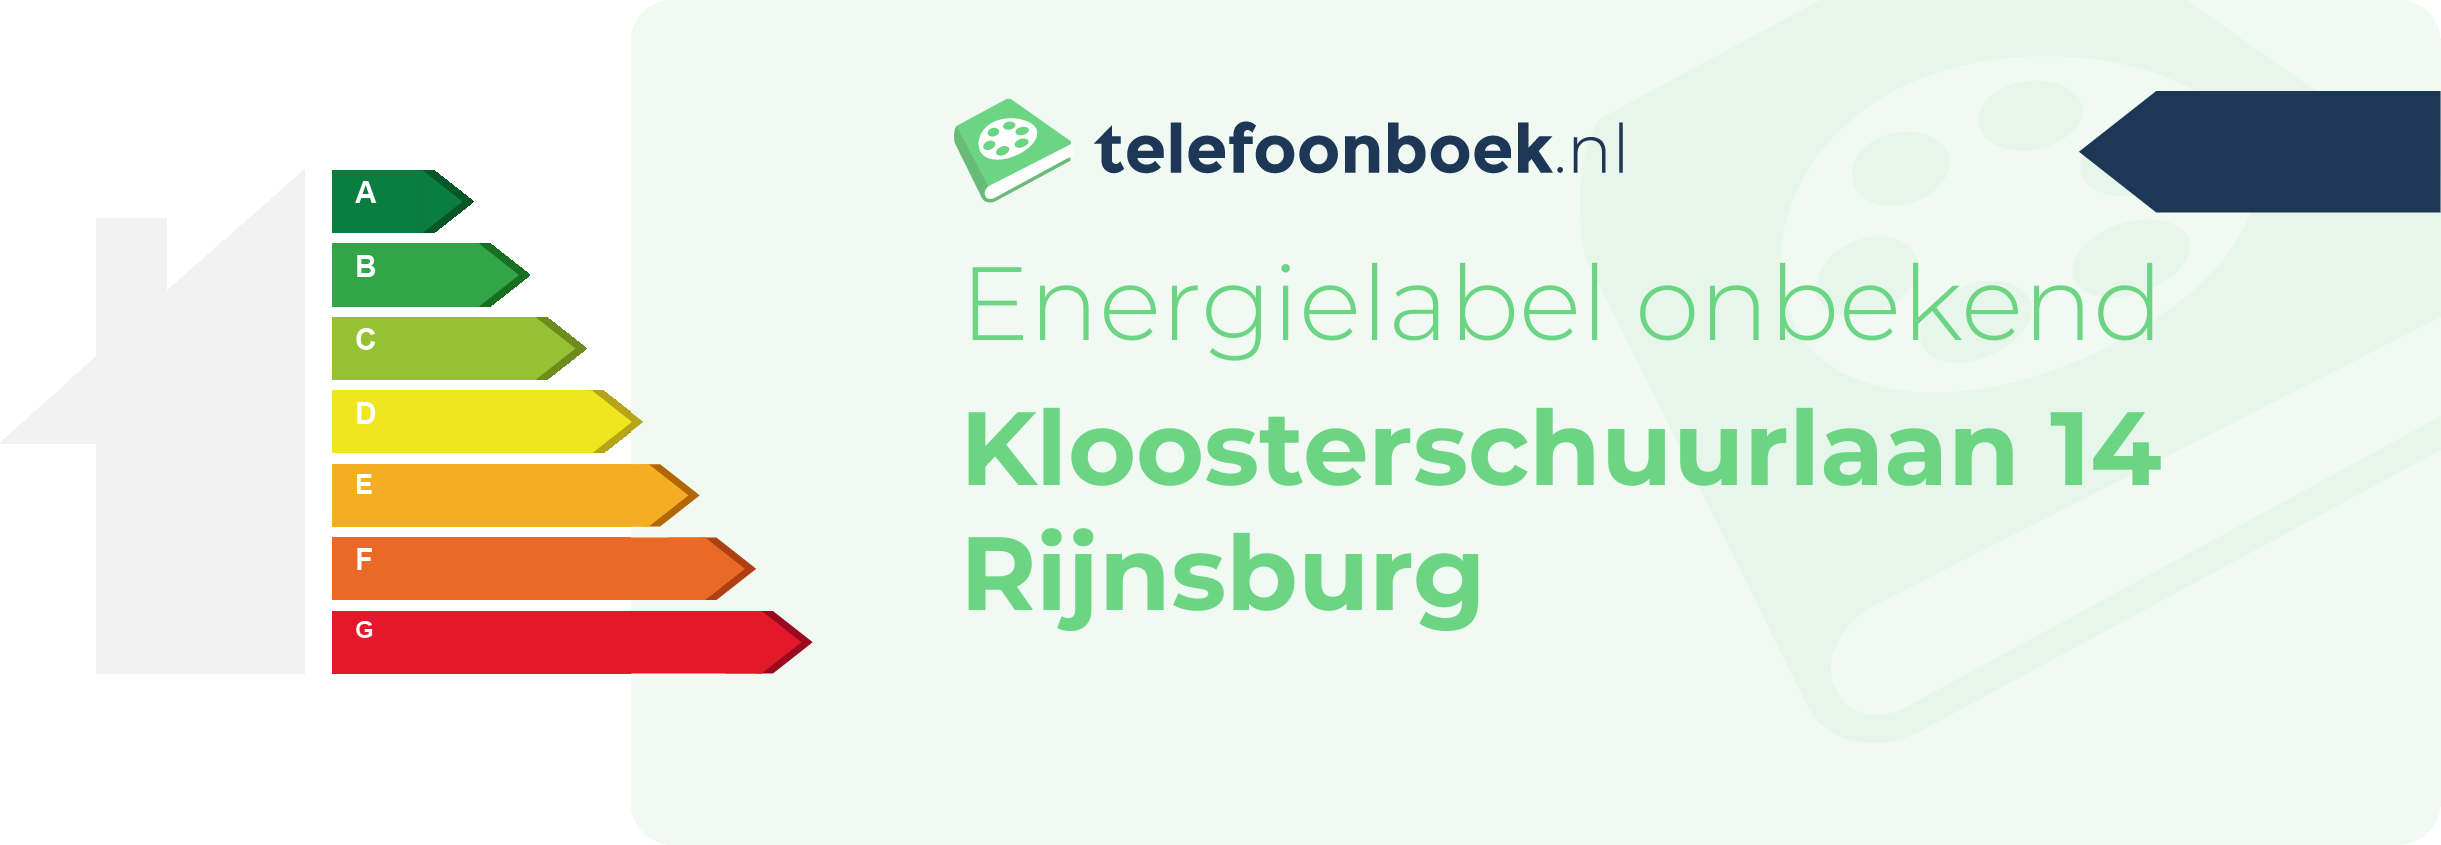 Energielabel Kloosterschuurlaan 14 Rijnsburg